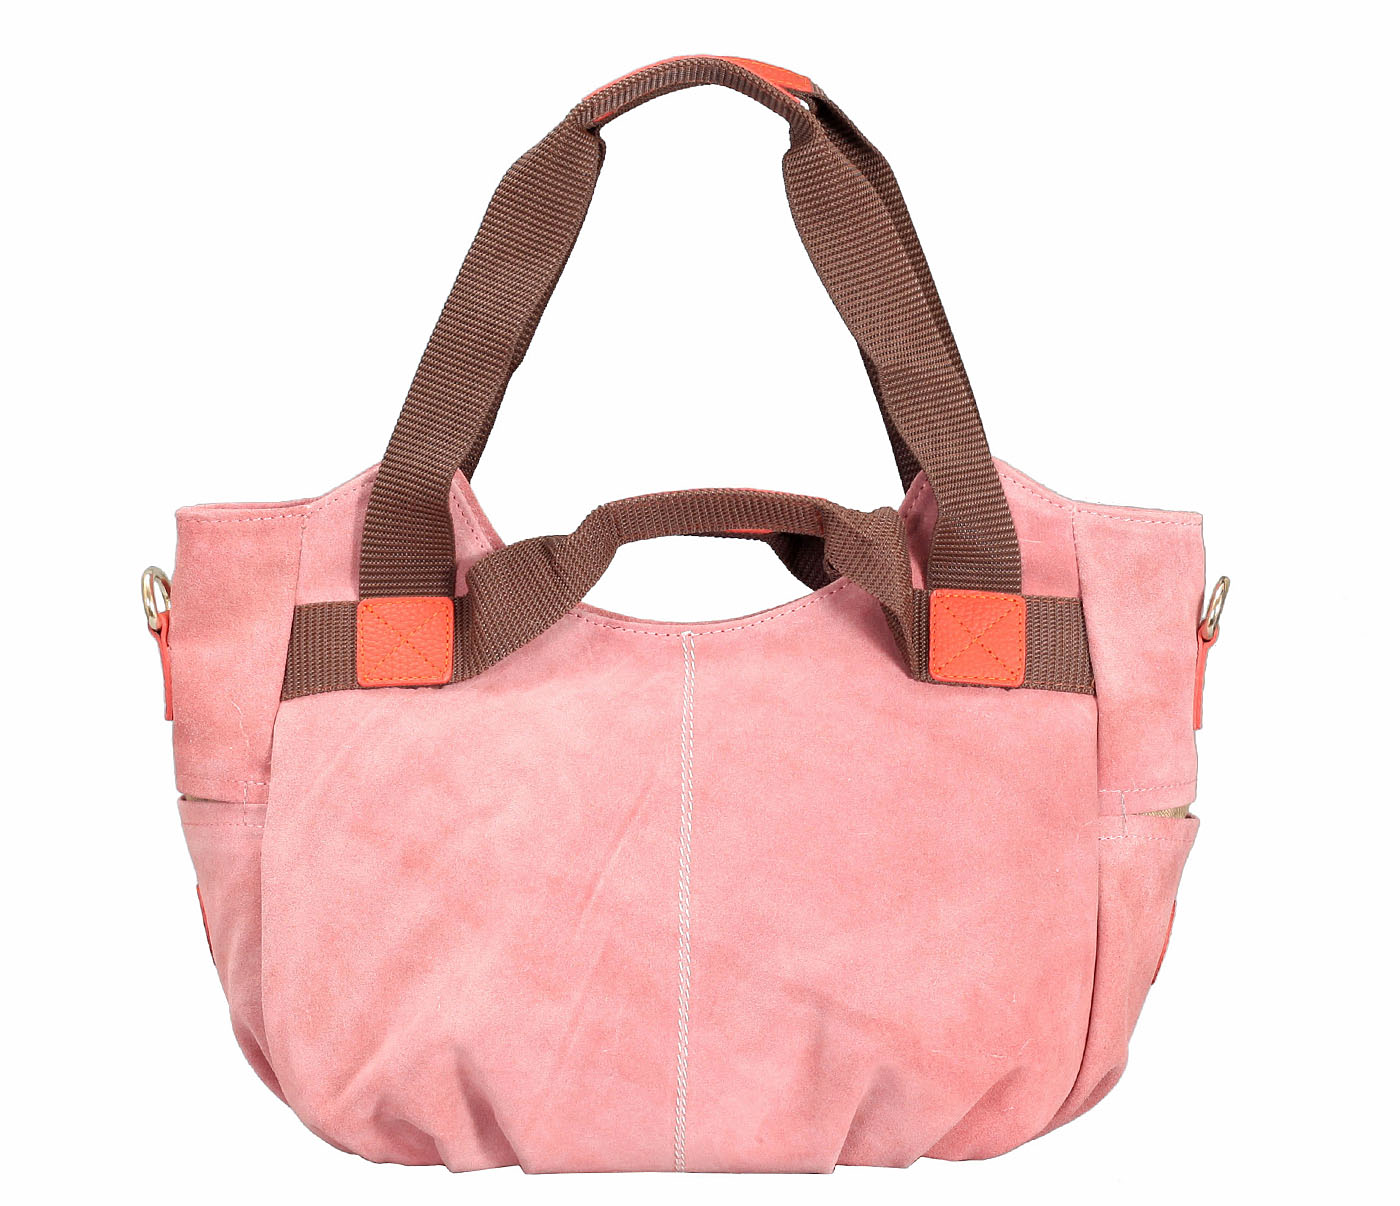 B857-Crisanta-Semi casual bag in Genuine Leather - Pink.